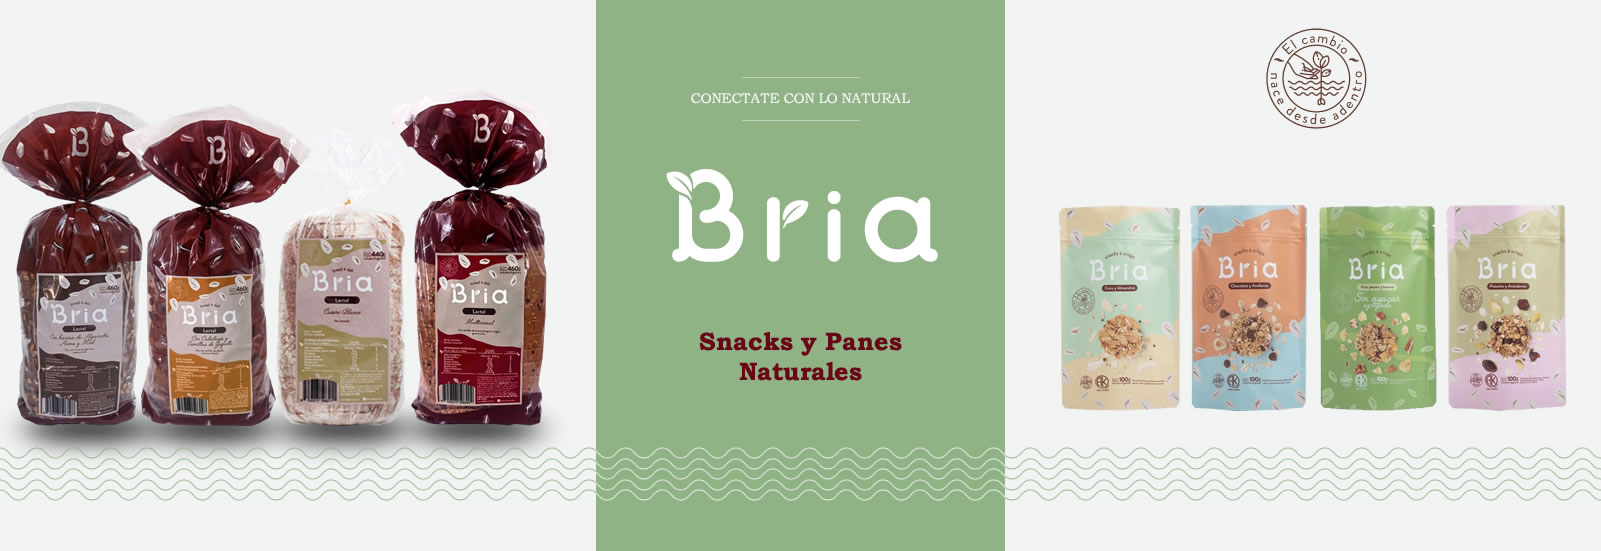 snacks y panes naturales bria